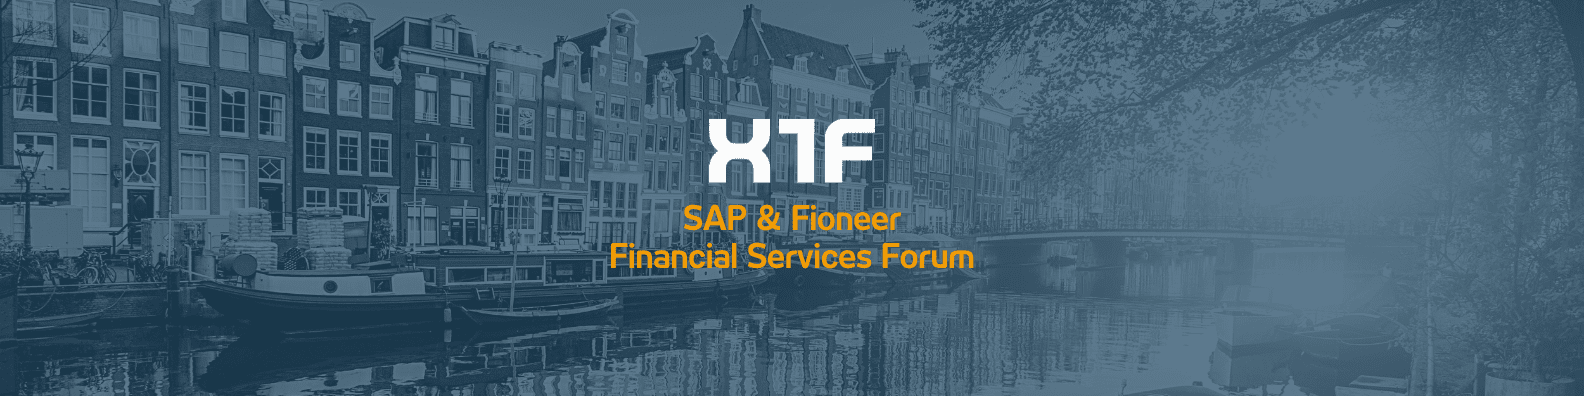 Naar boven verontschuldiging Refrein X1F at the SAP & Fioneer Financial Services Forum in Amsterdam | July  12-14, 2022 | ADWEKO | IT-Lösungen für Banken & Versicherungen